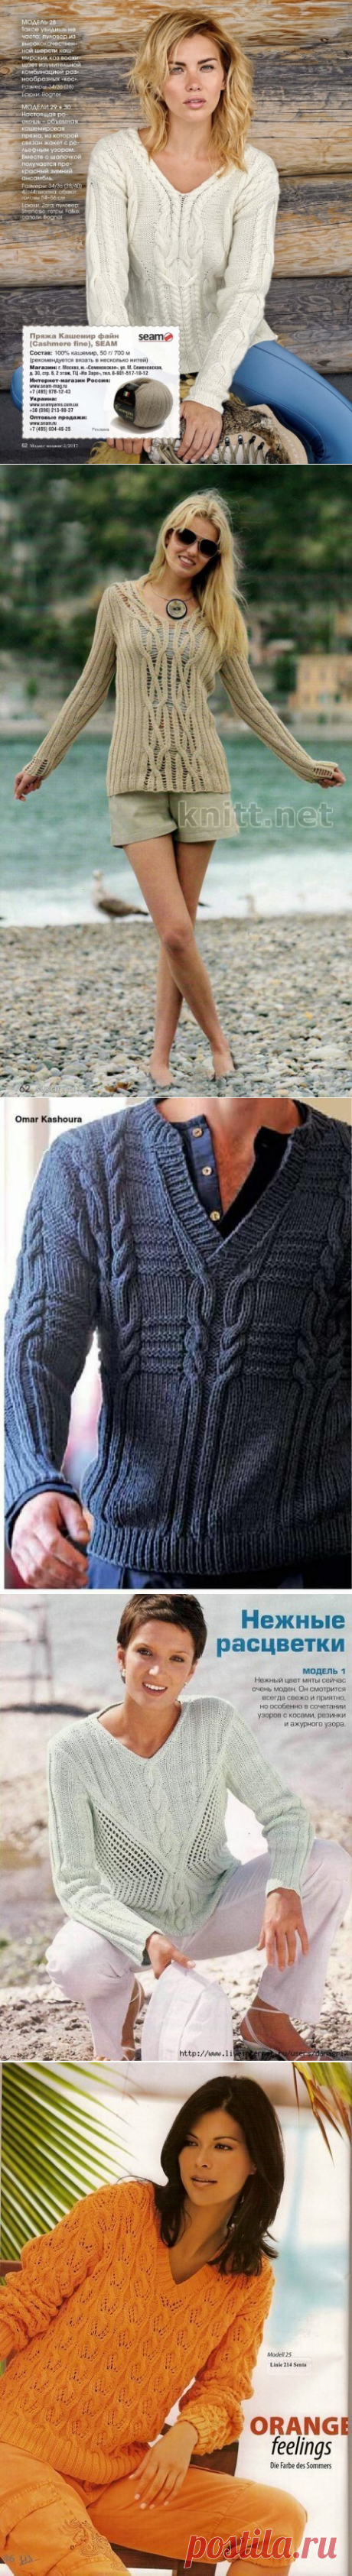 Пуловер. Вязание спицами. 10 моделей. Схемы. | Марусино рукоделие | Яндекс Дзен